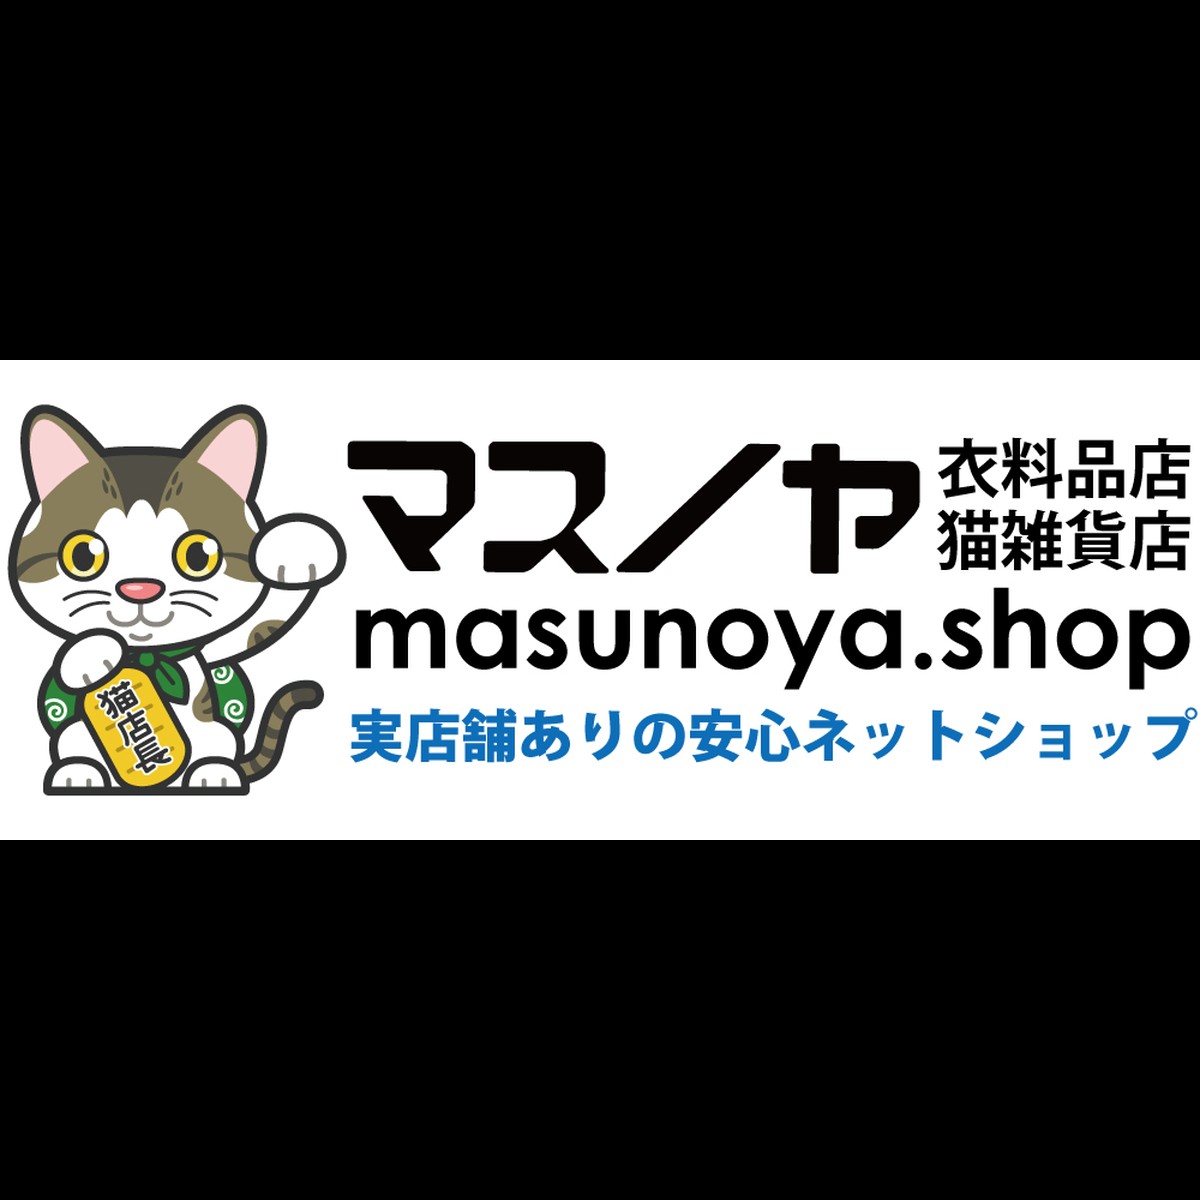 猫キッチングッズ 食器 マスノヤ衣料品店 マスノヤ猫雑貨店